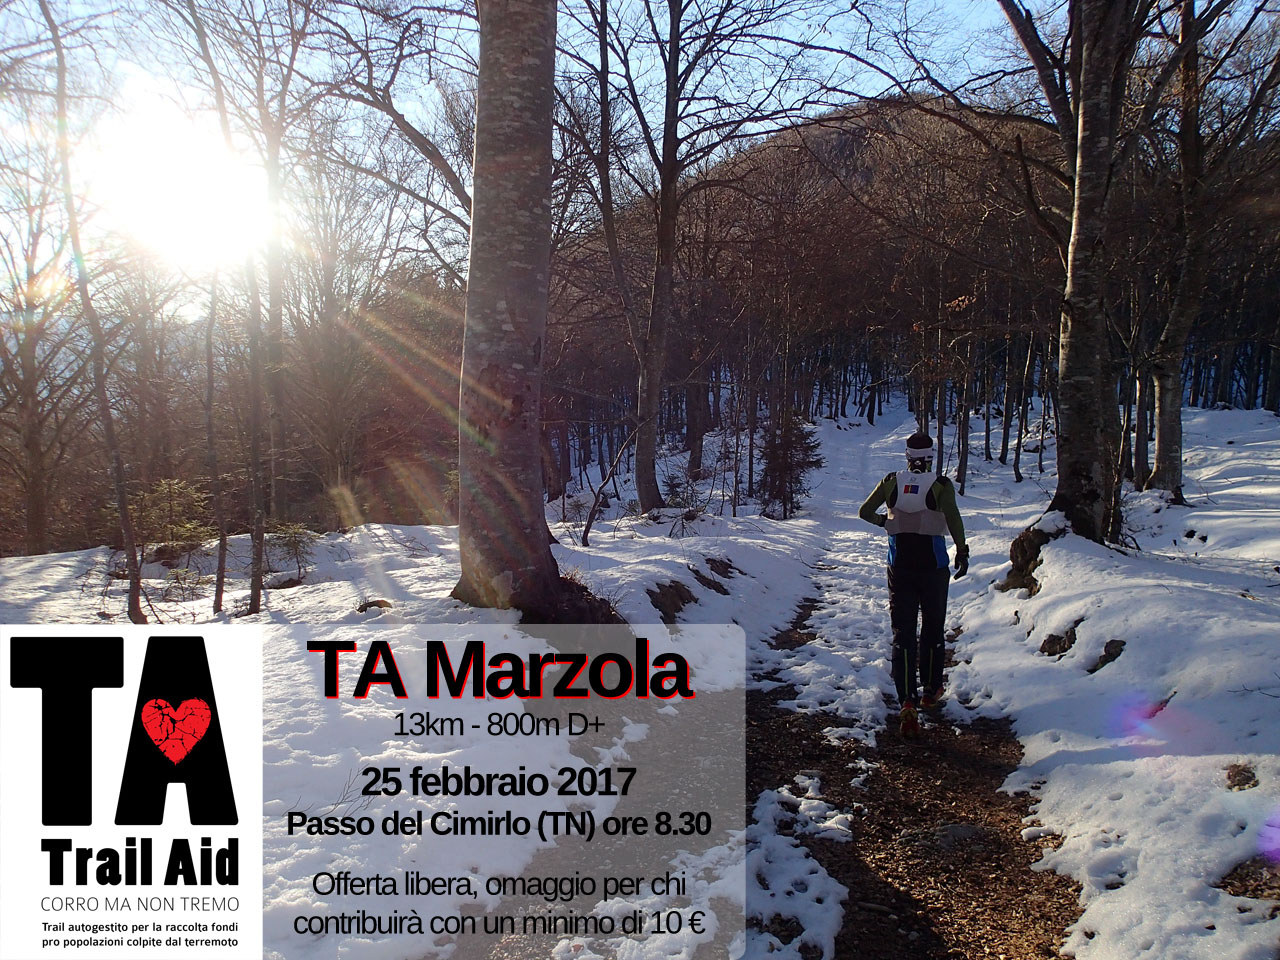 Trail Aid Marzola